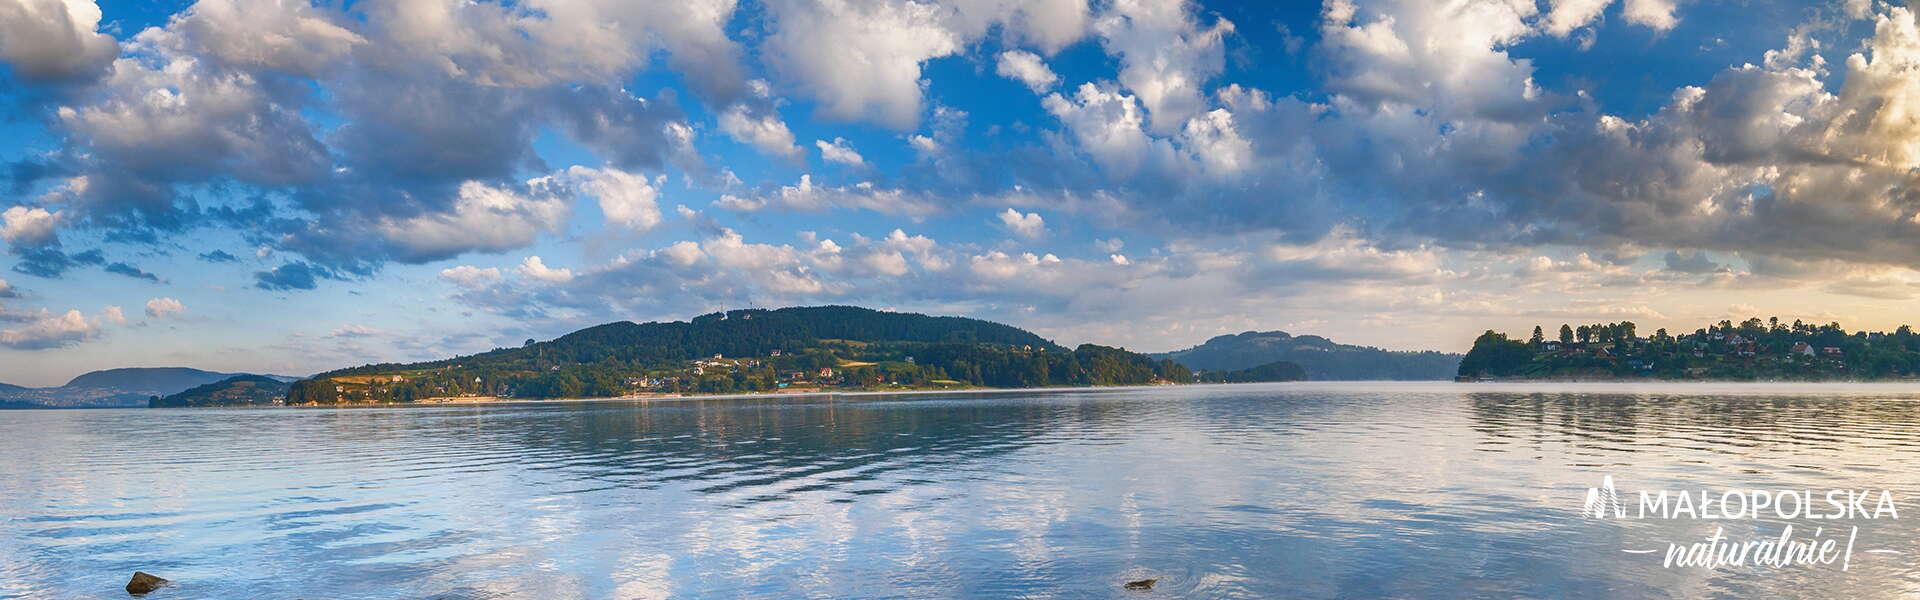 Jezioro Rożnowskie - zbliżenie na taflę wody, w tle otaczające pagórki